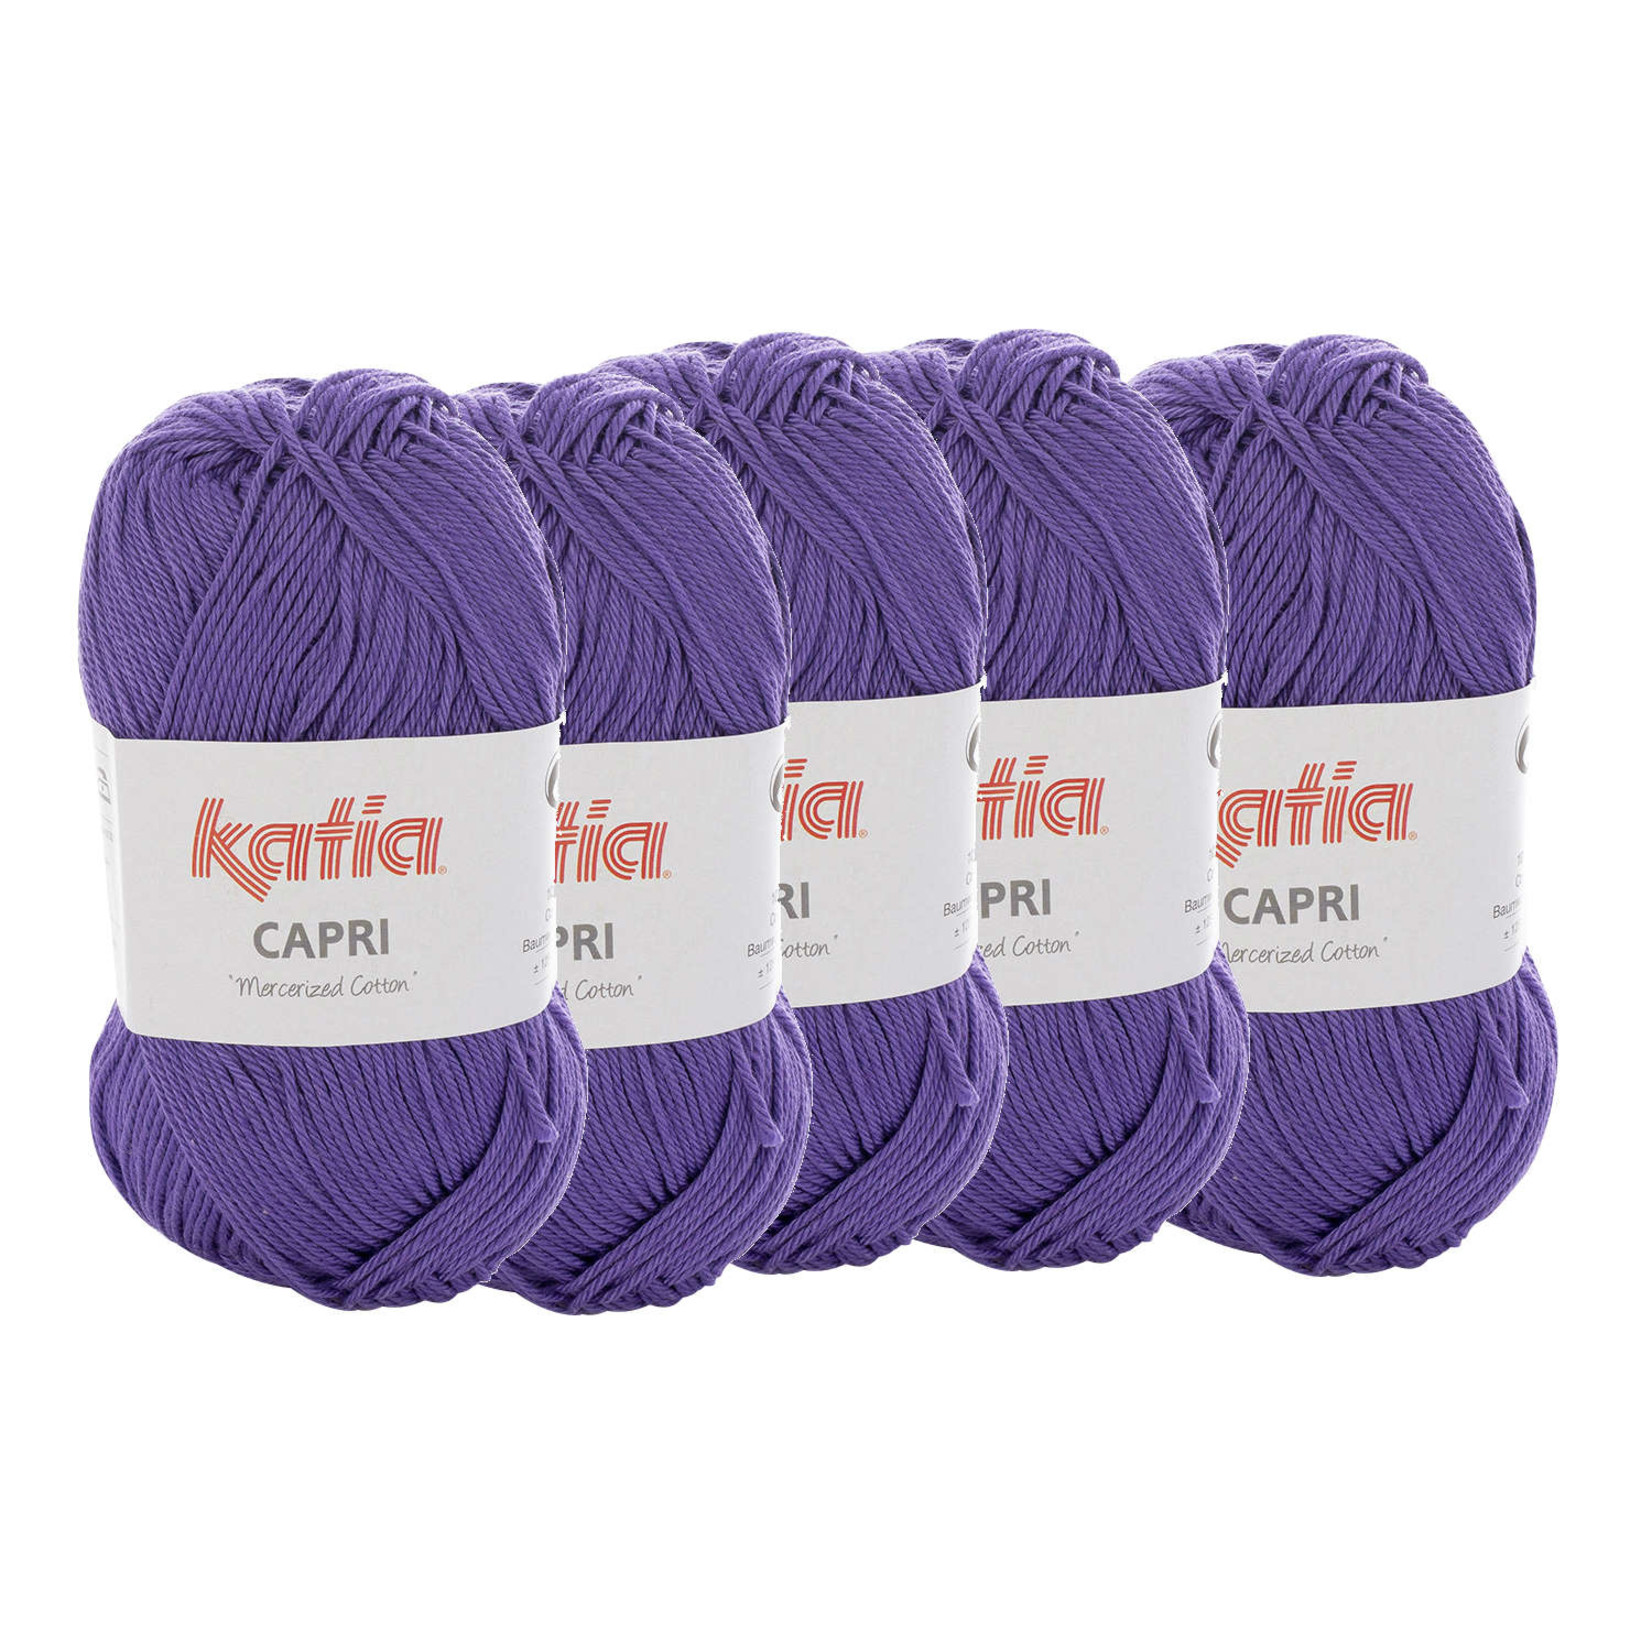 Katia Katia Capri - kleur 131 Donkerlila - bundel 5 x 50 gr. / 125 m. - 100% katoen